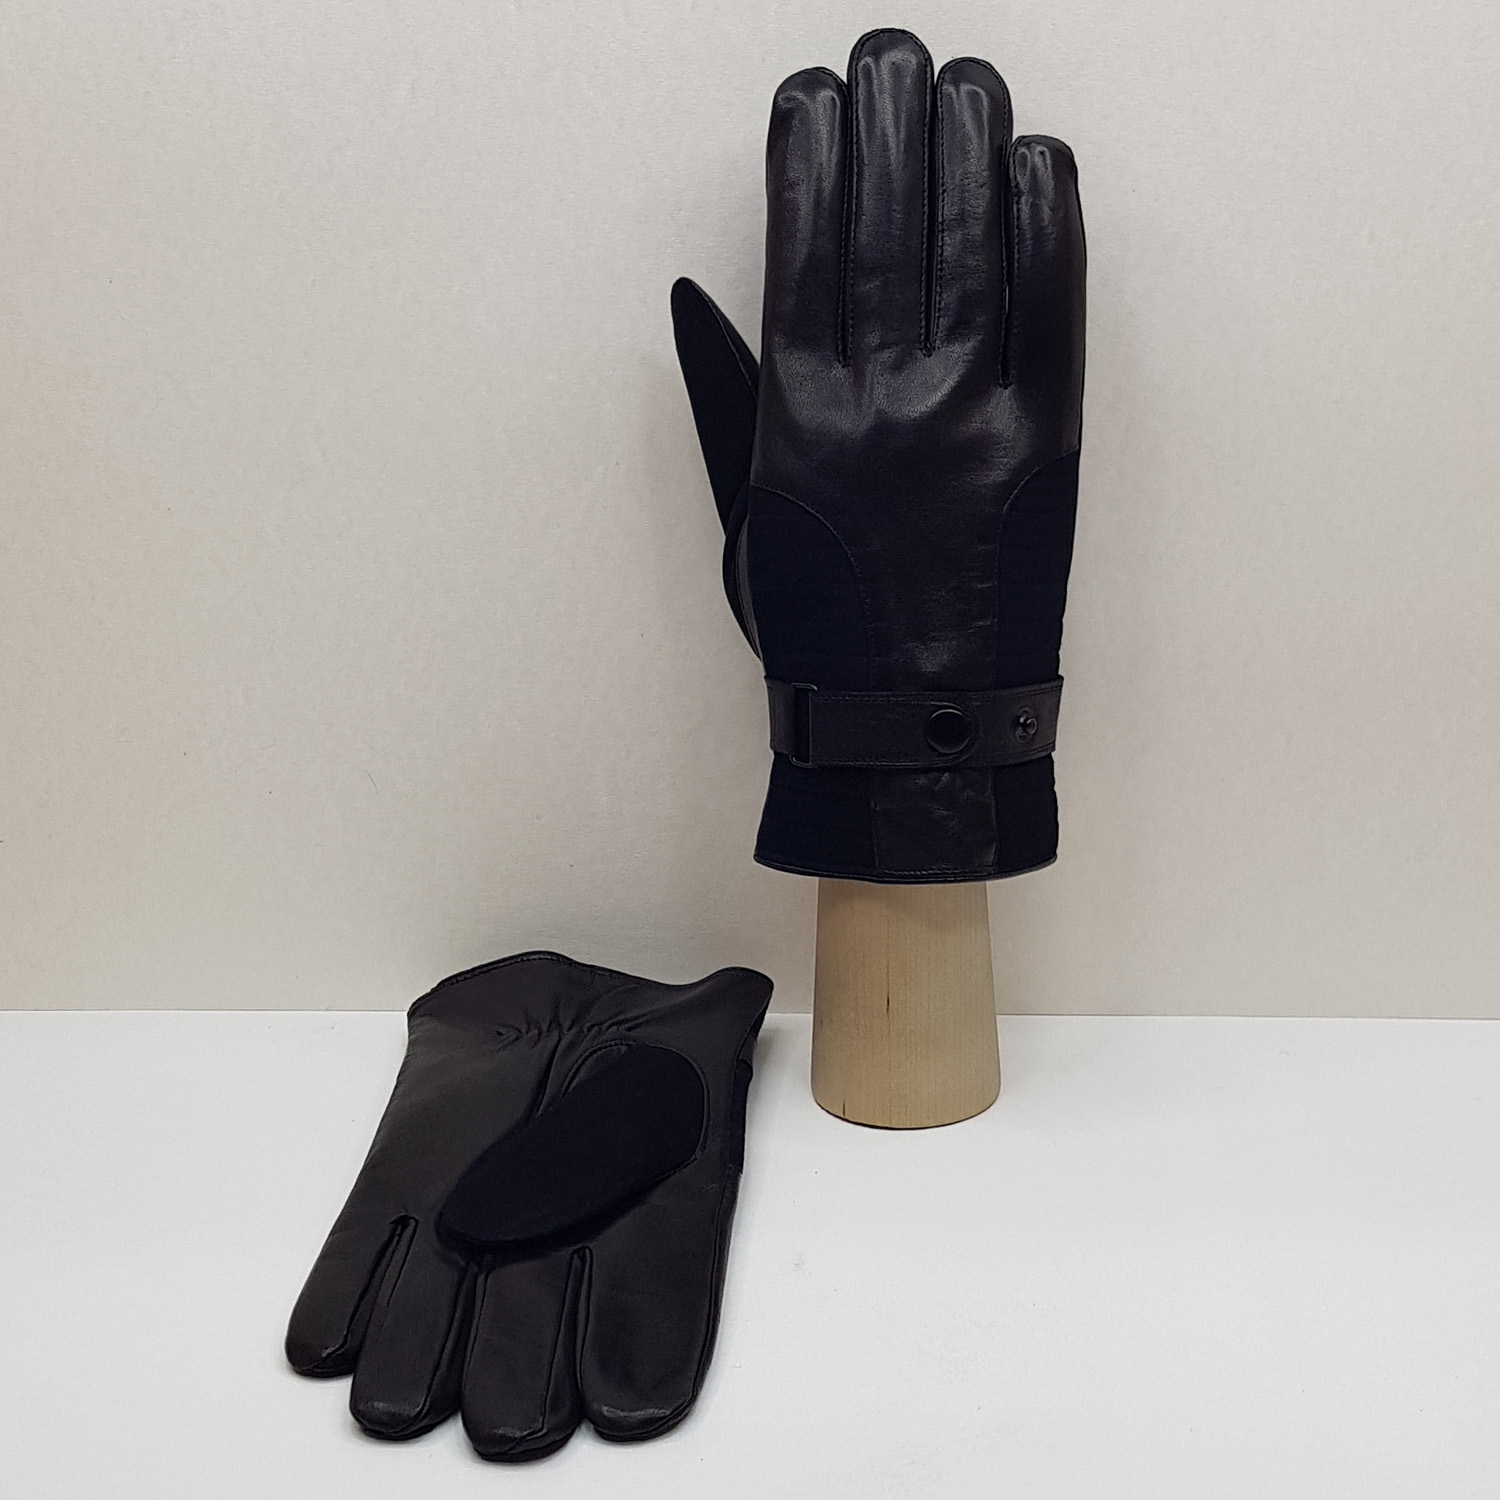 Мужские перчатки кожаные с меховой подкладкой №4 (Упаковка 5 шт.)